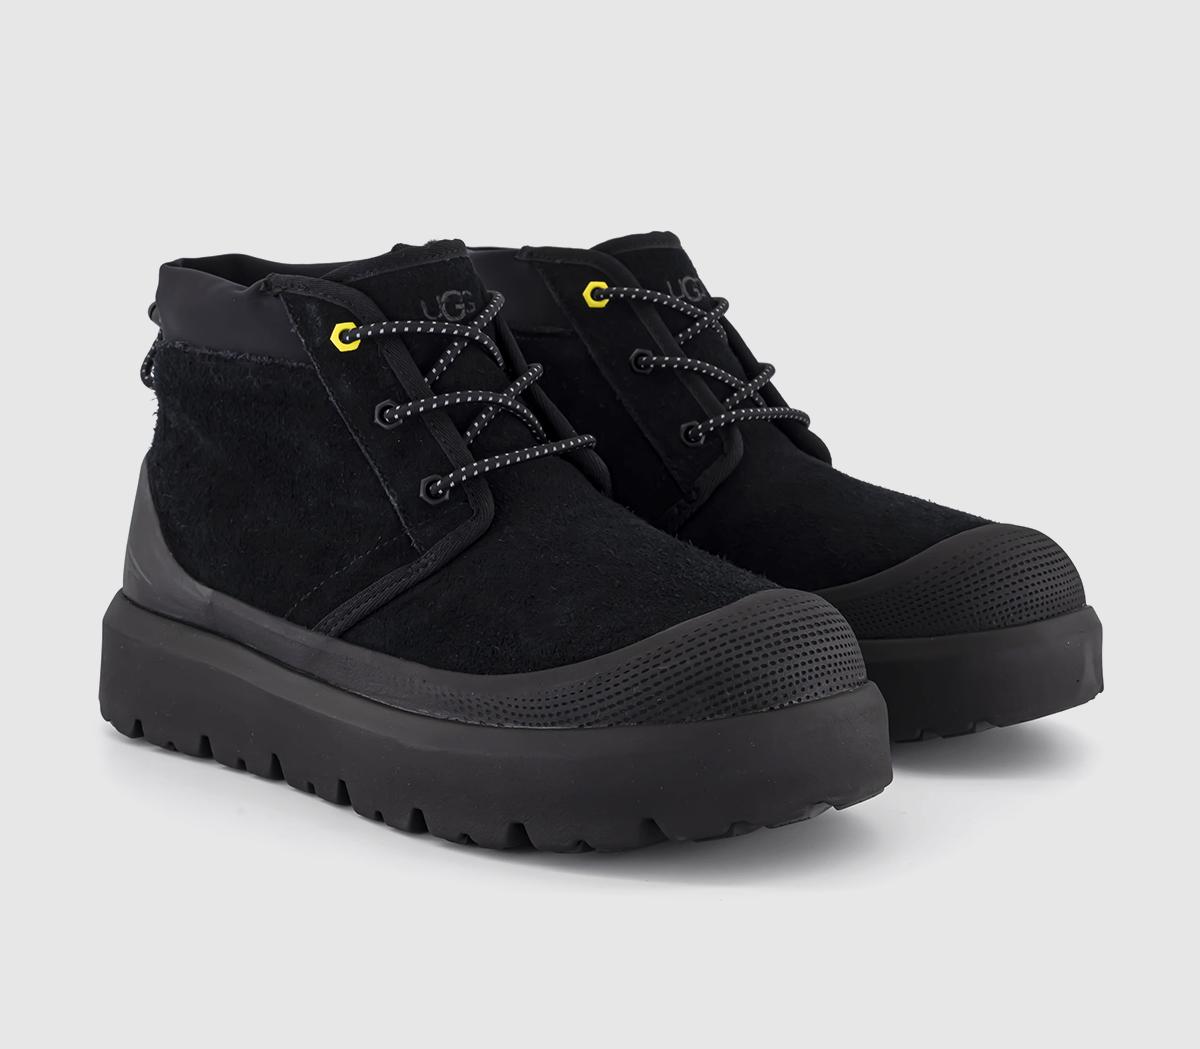 UGG Neumel Weather Hybrid Boots Black - Men’s Boots